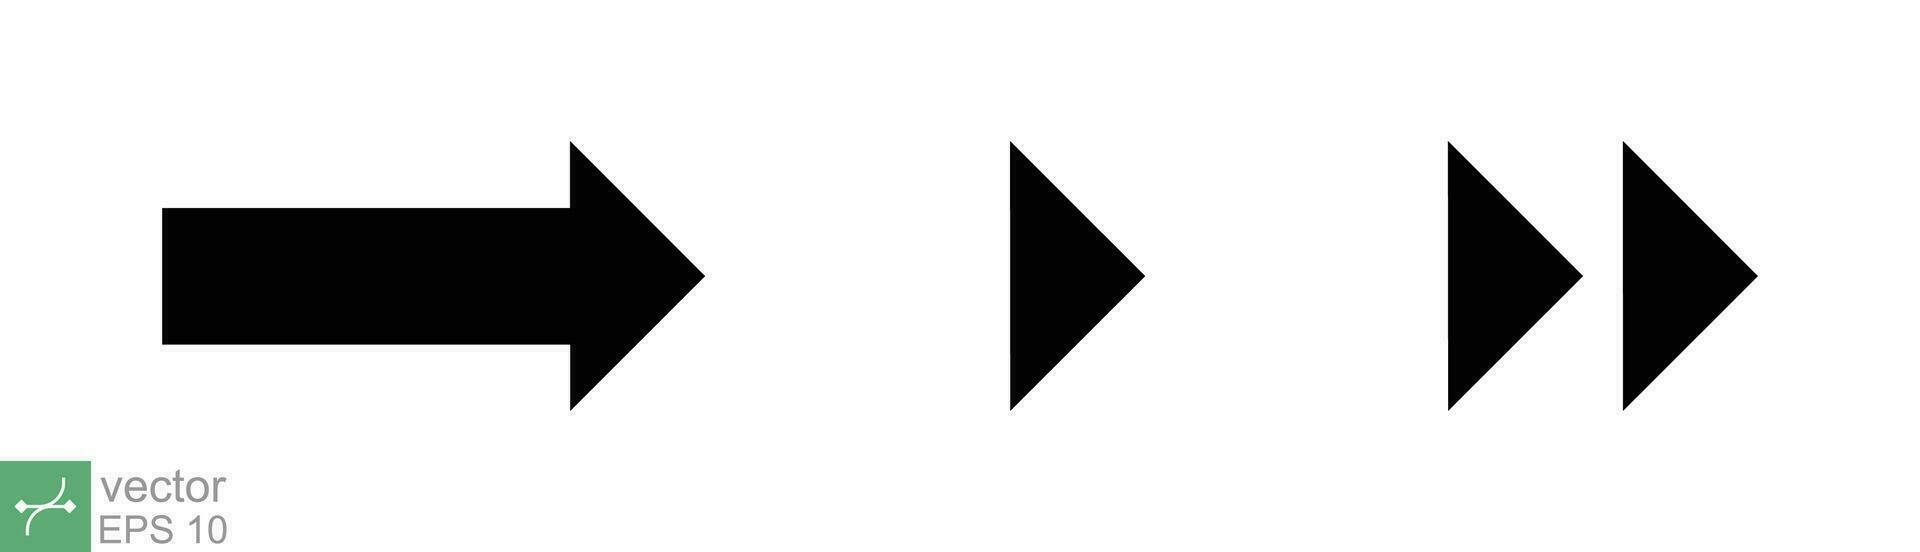 La Flèche vecteur icône collection. droite, gauche, en haut, bas, différent noir direction signe élément. vecteur illustration isolé sur blanc Contexte. eps dix.